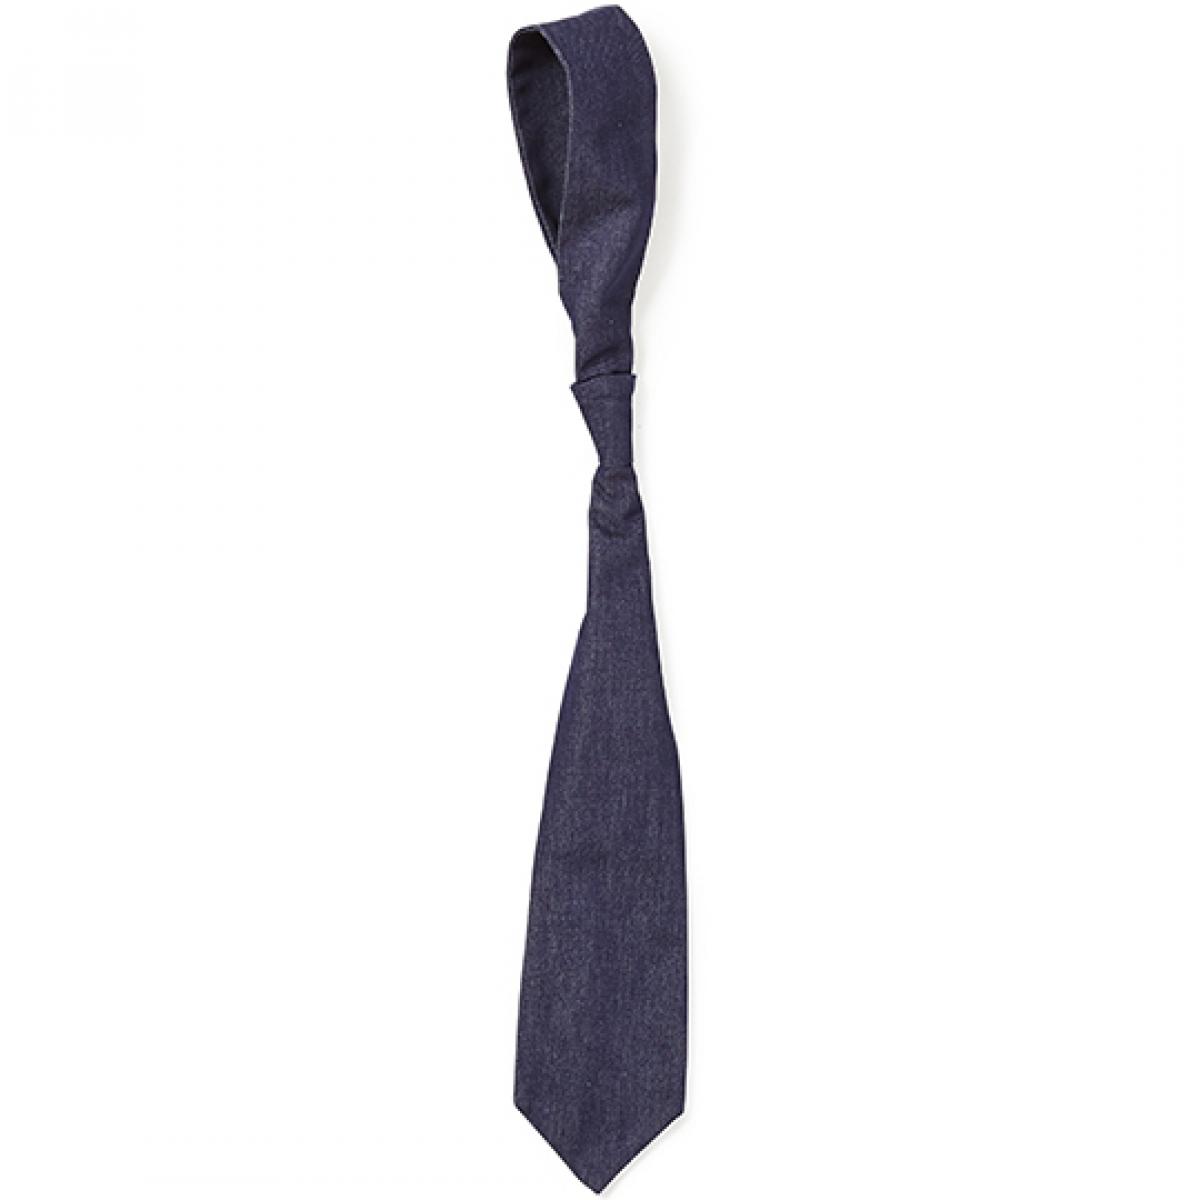 Hersteller: CG Workwear Herstellernummer: 04360-32 Artikelbezeichnung: Krawatte Frisa Man, 120 cm Farbe: Denim